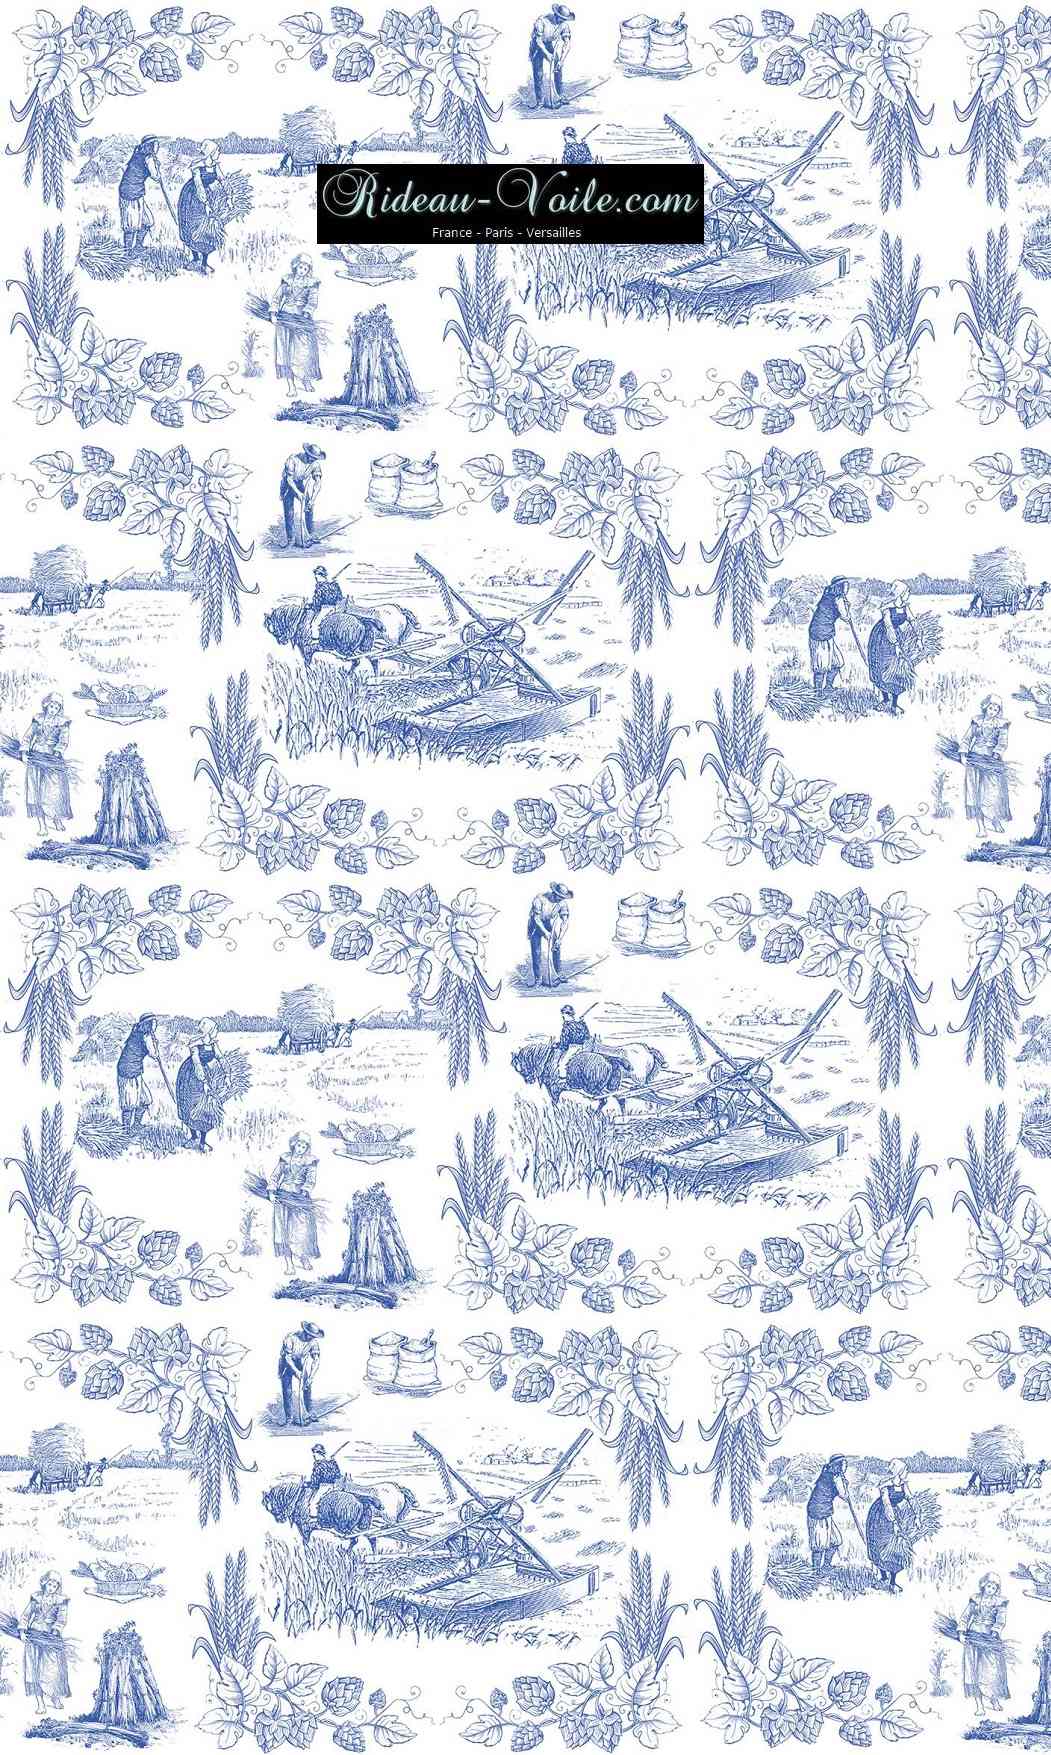 Toile de Jouy tissu au mètre ameublement textile Paris Versailles Yvelines decoration french pattern haut gamme bleu blue